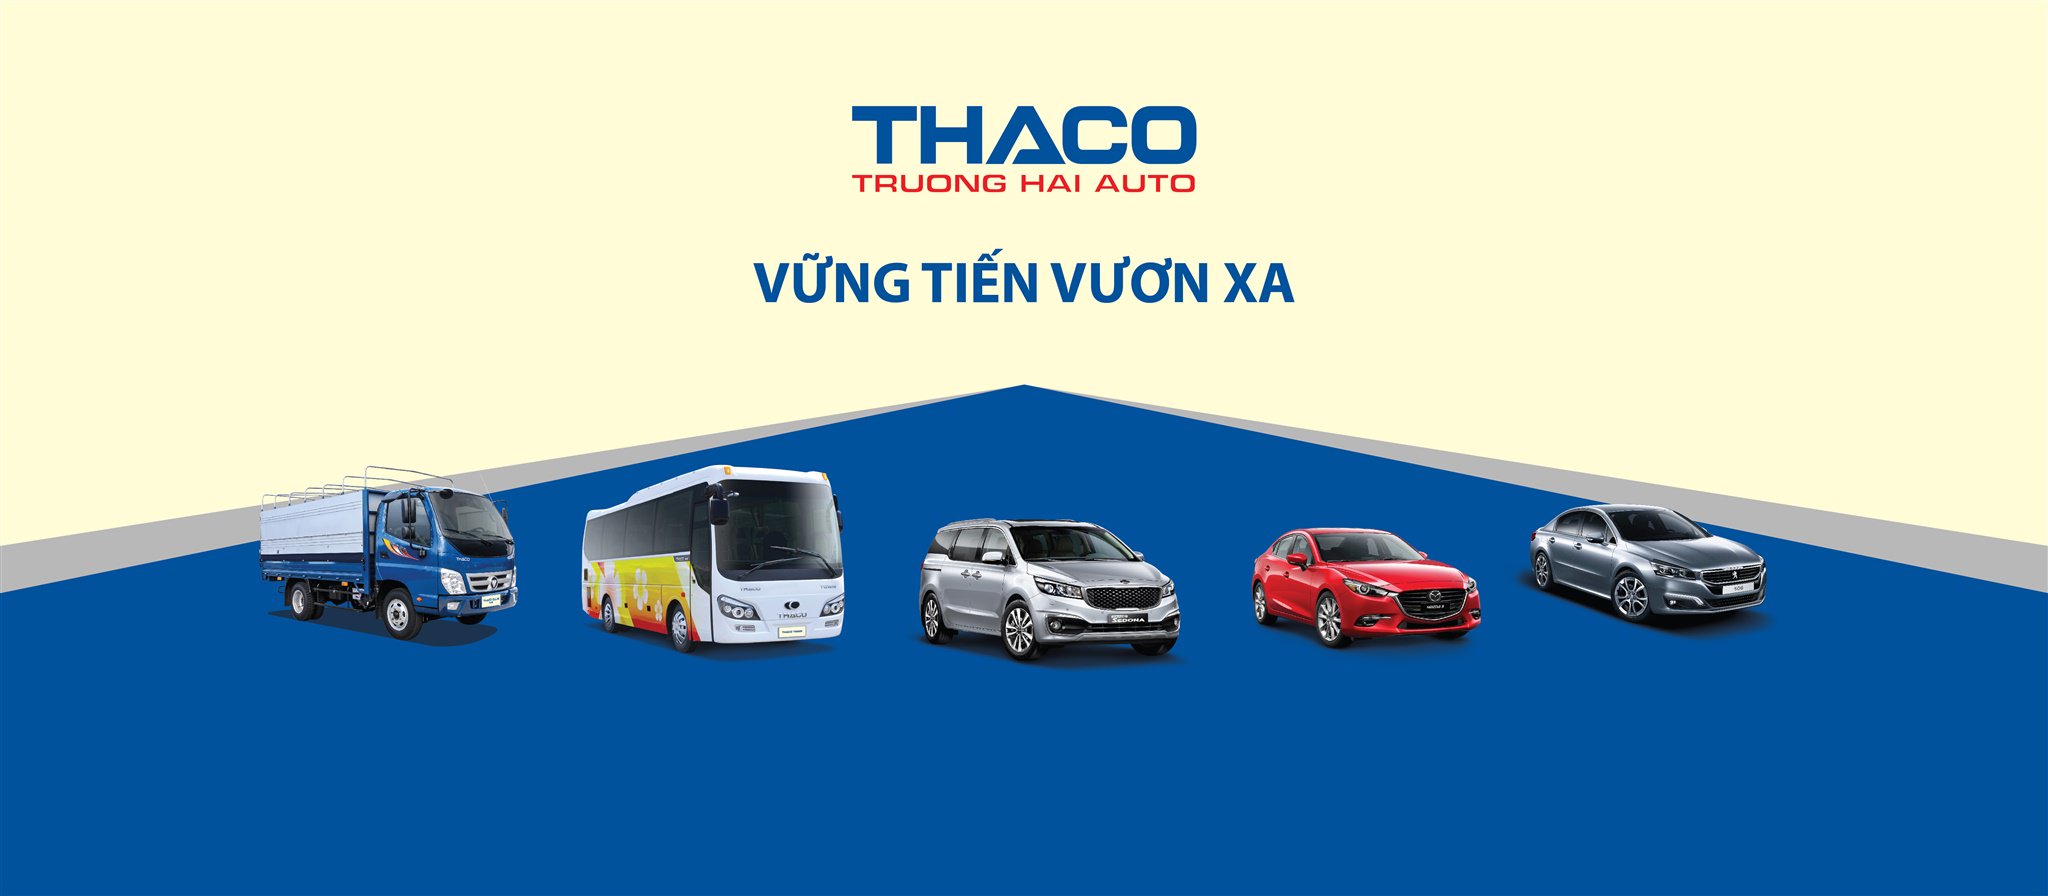 Sự mạnh mẽ của xe tải Thaco sẽ khiến bạn muốn xem hình ảnh liên quan. Với độ bền cao và khả năng vận chuyển hàng hóa, Thaco là sự lựa chọn hoàn hảo cho những chủ doanh nghiệp hay những người cần vận chuyển hàng hóa.